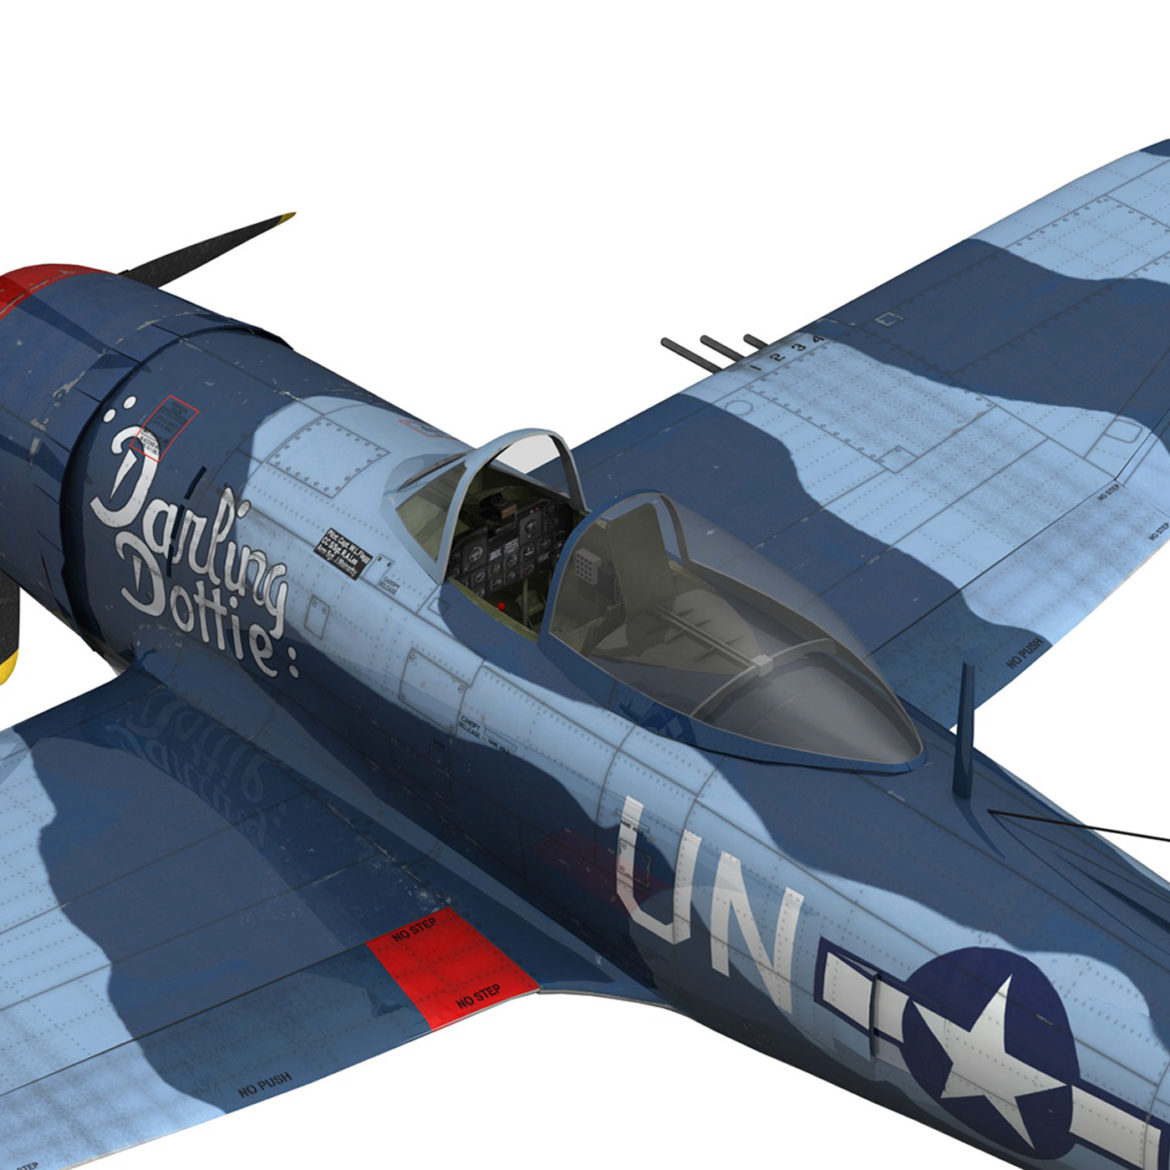 republic p-47m thunderbolt – darling dottie 3d model 3ds c4d lwo lw lws obj fbx 303852